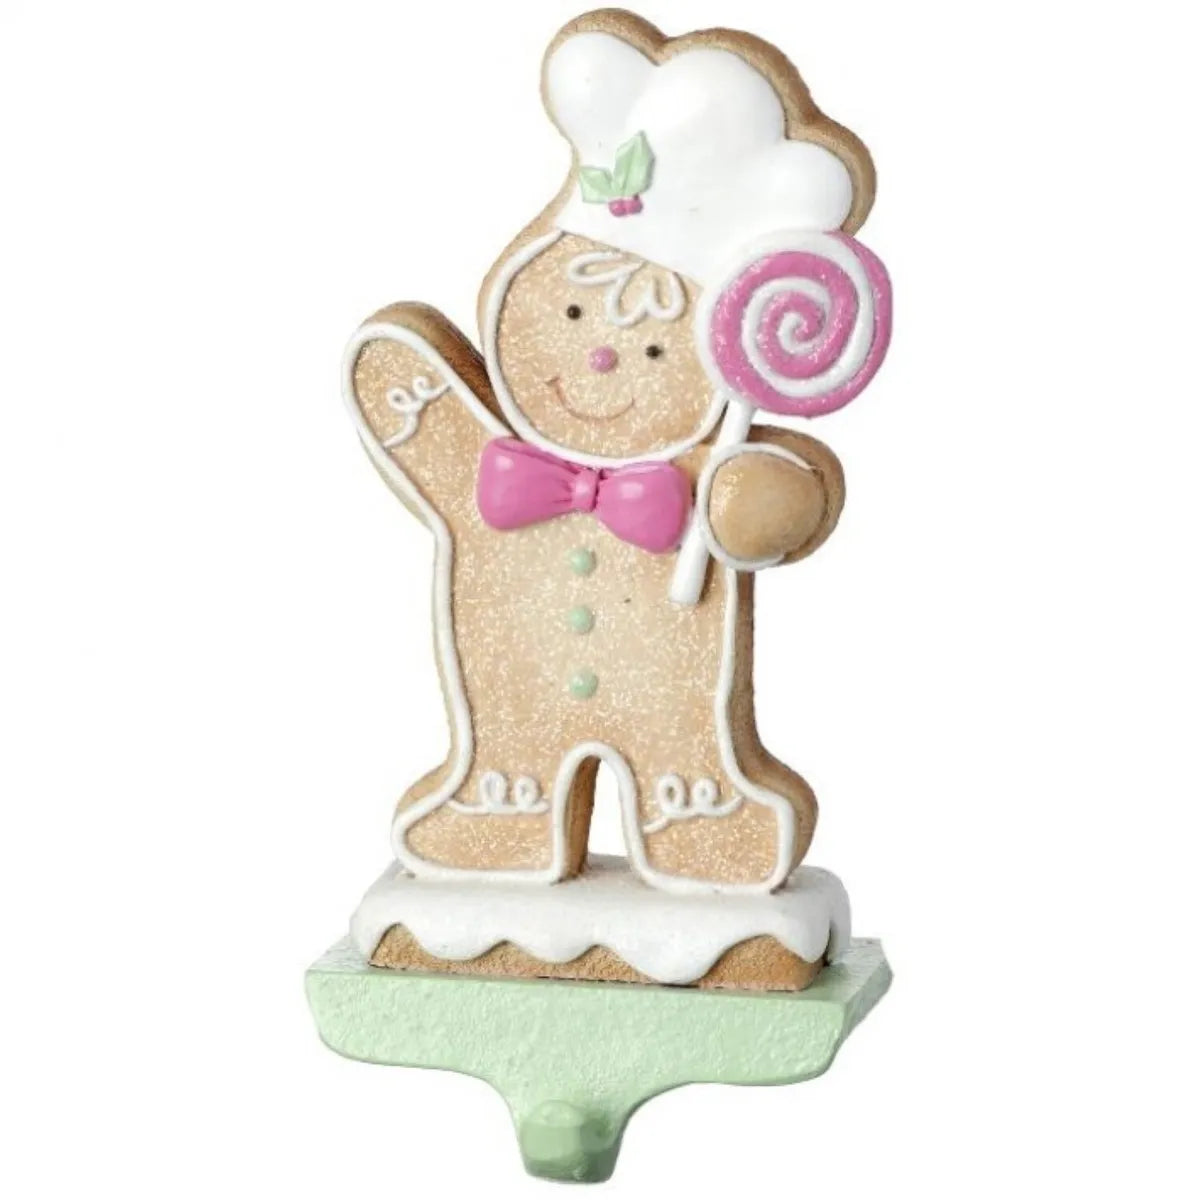 8.5" Resin Boy or Girl Gingerbread Stocking Holder